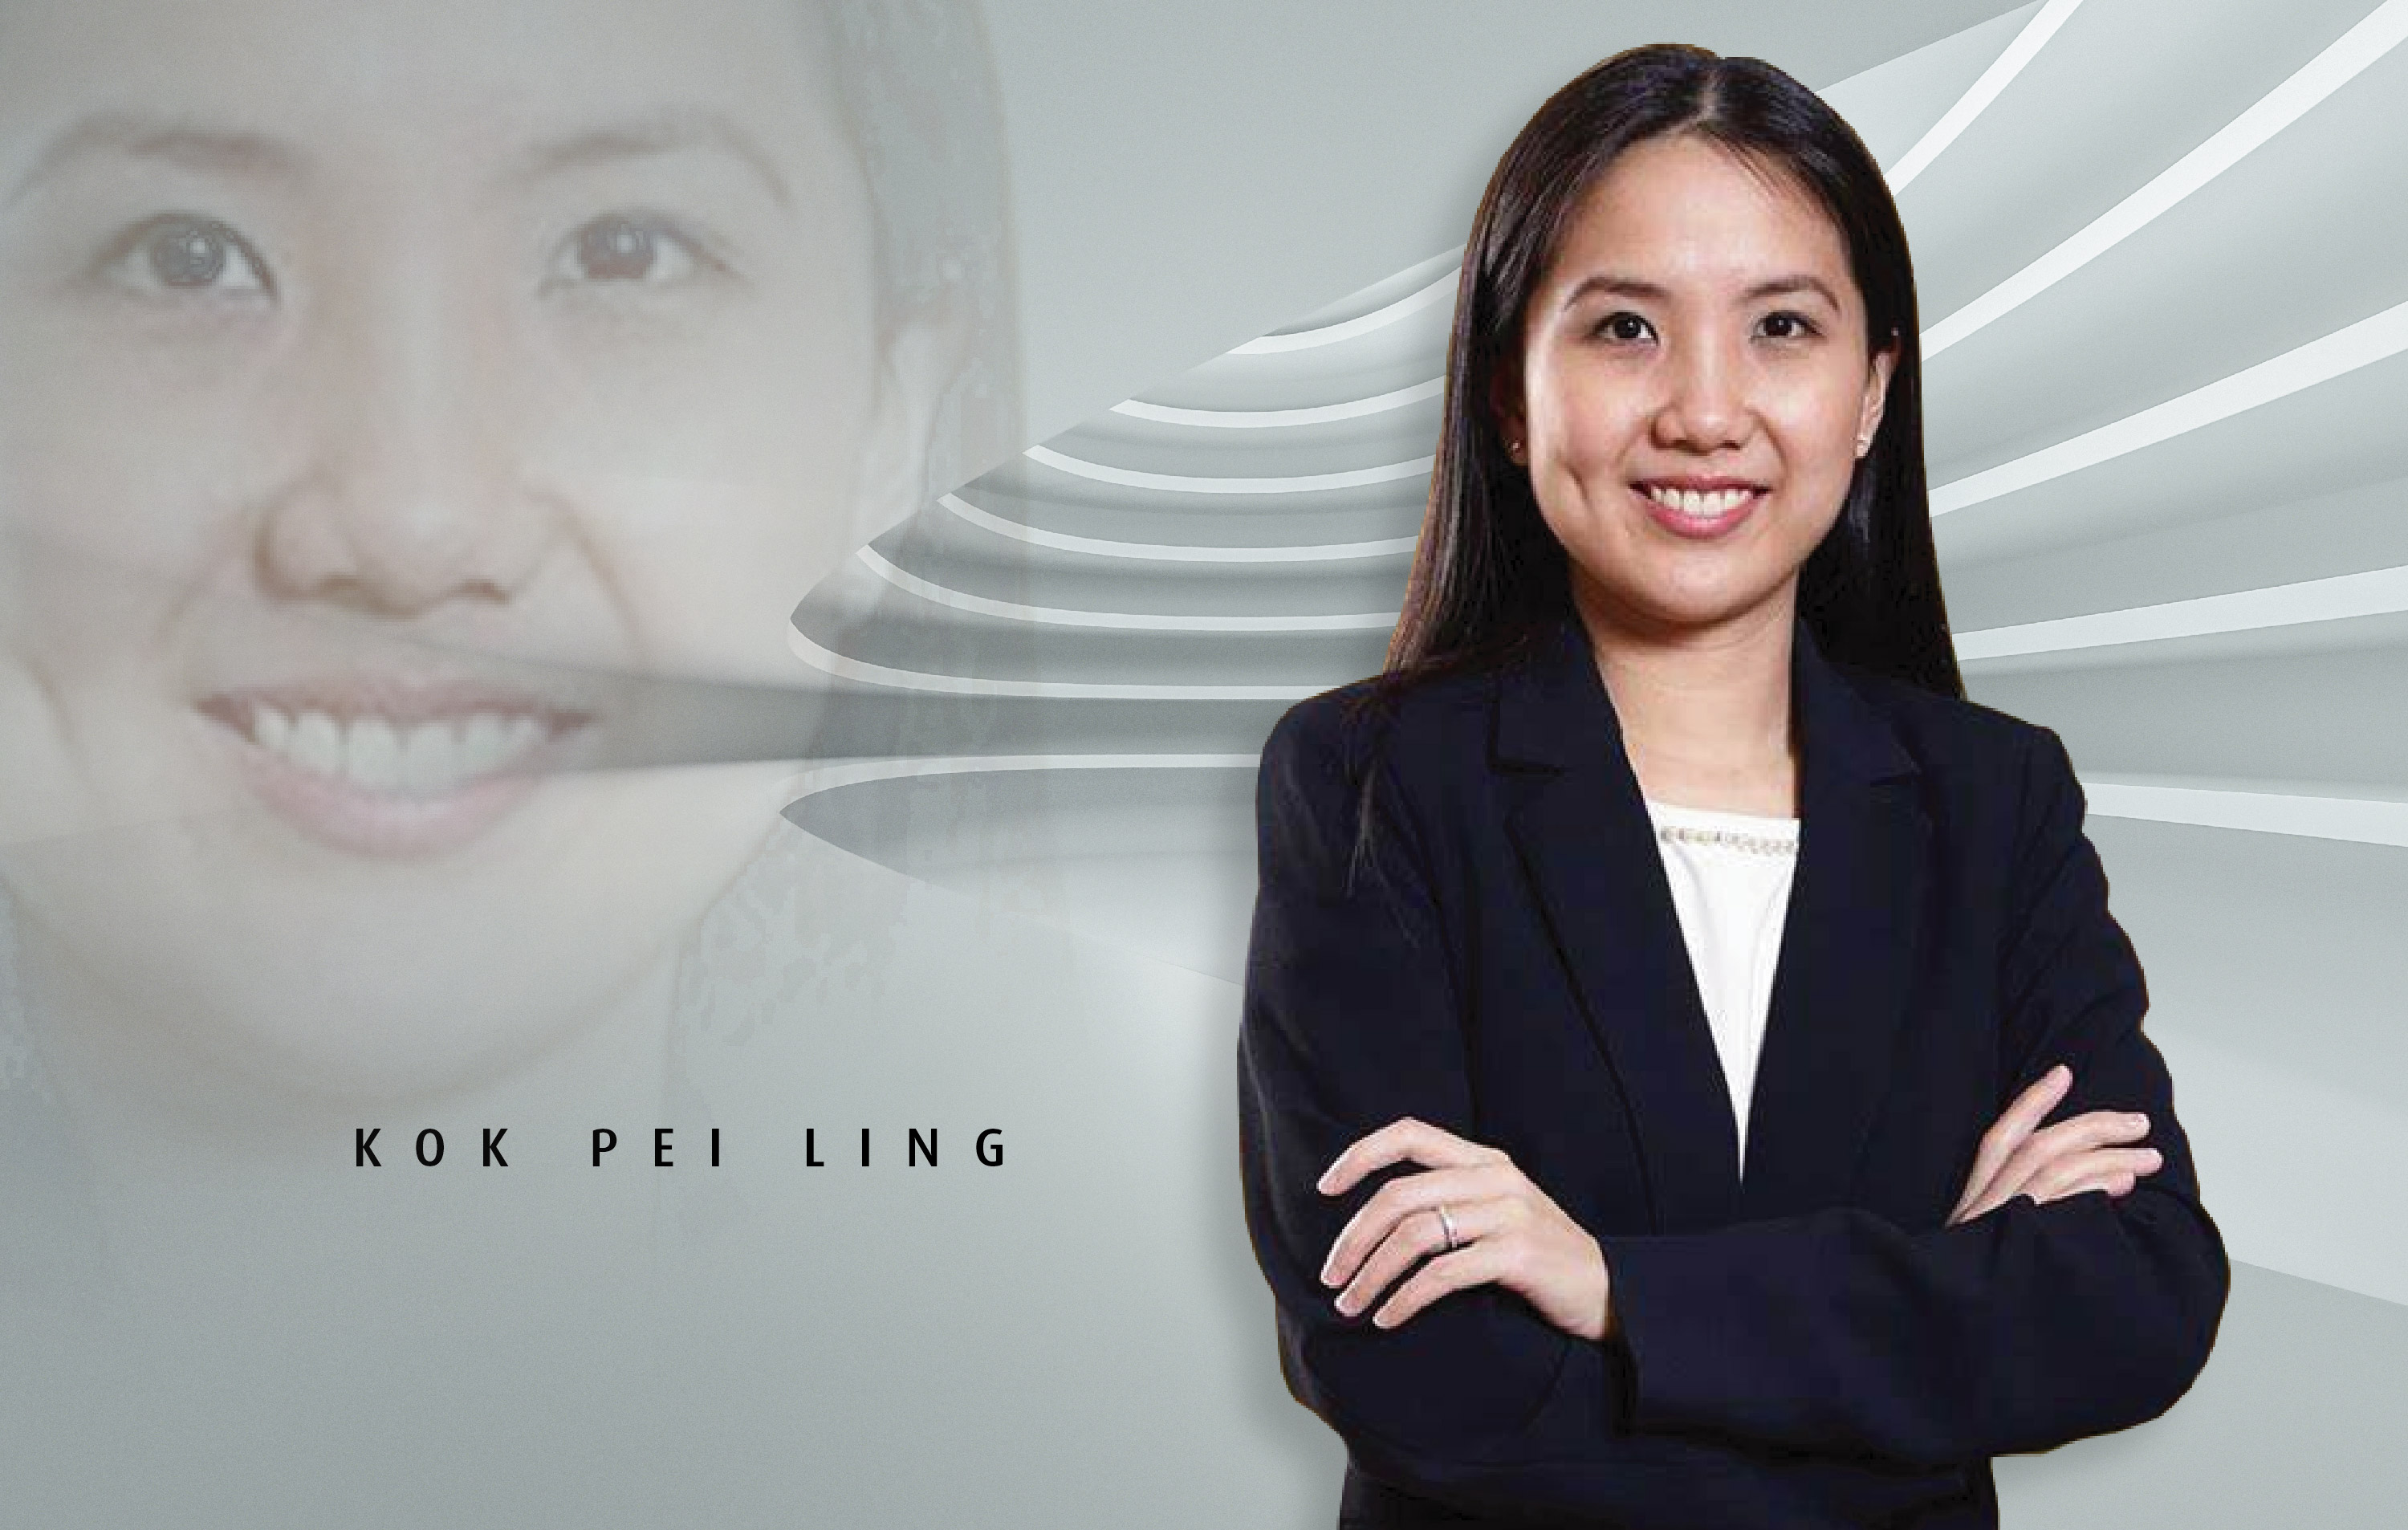 Gadang Holdings New Gen is Kok Pei Ling, 39, daughter of Tan Sri Dato' Kok Onn, major shareholder